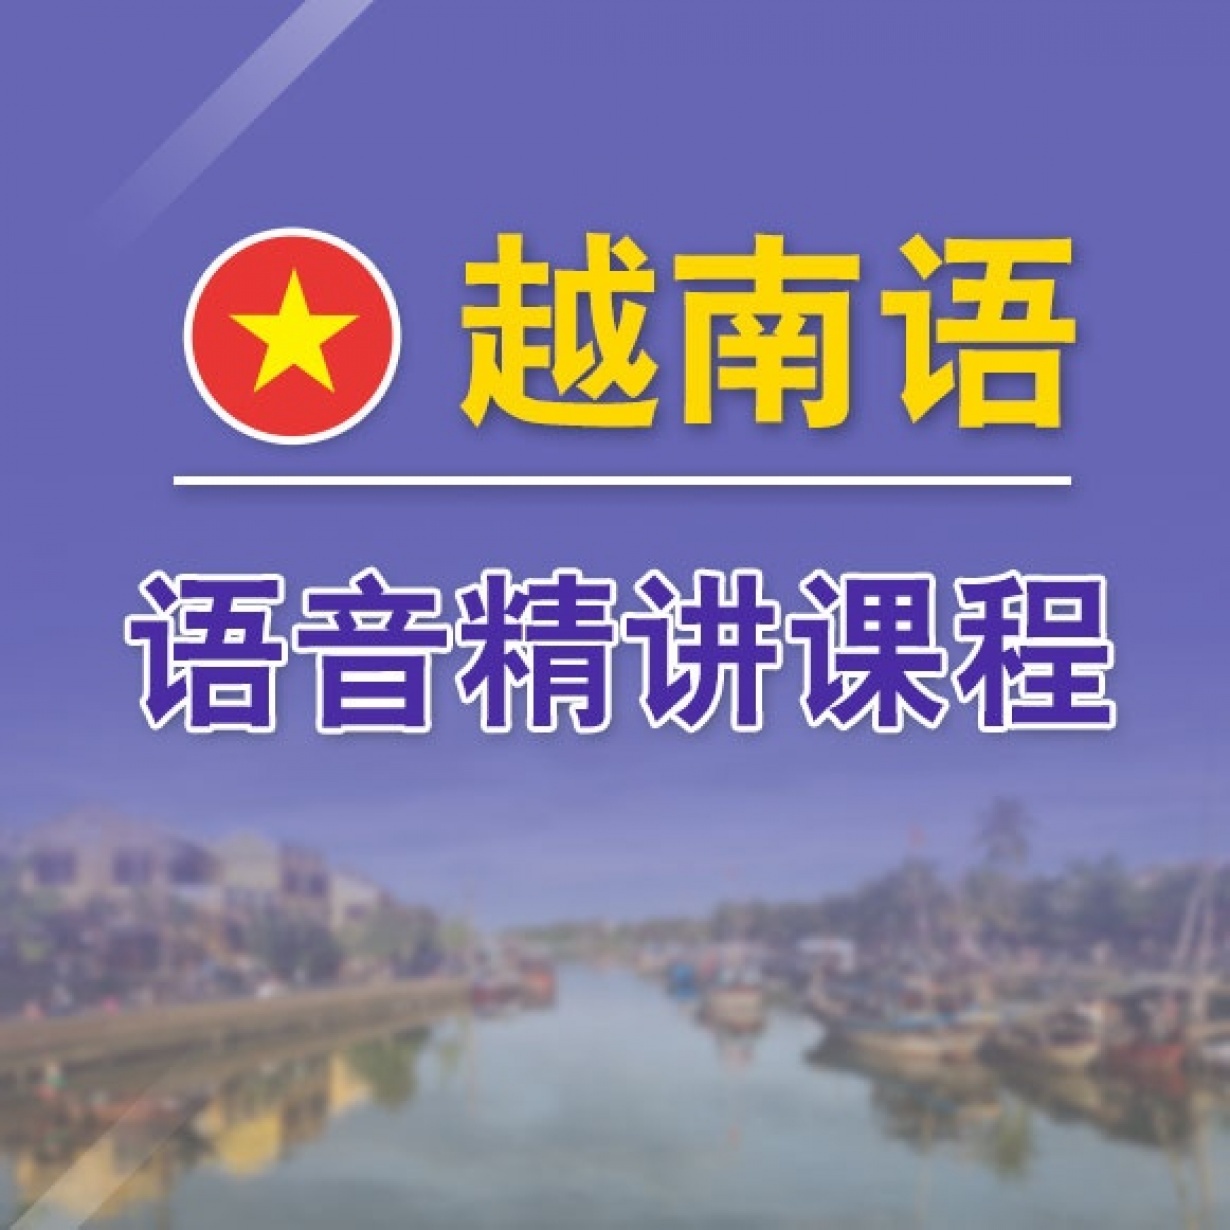 越南语语音精讲课程.mp4